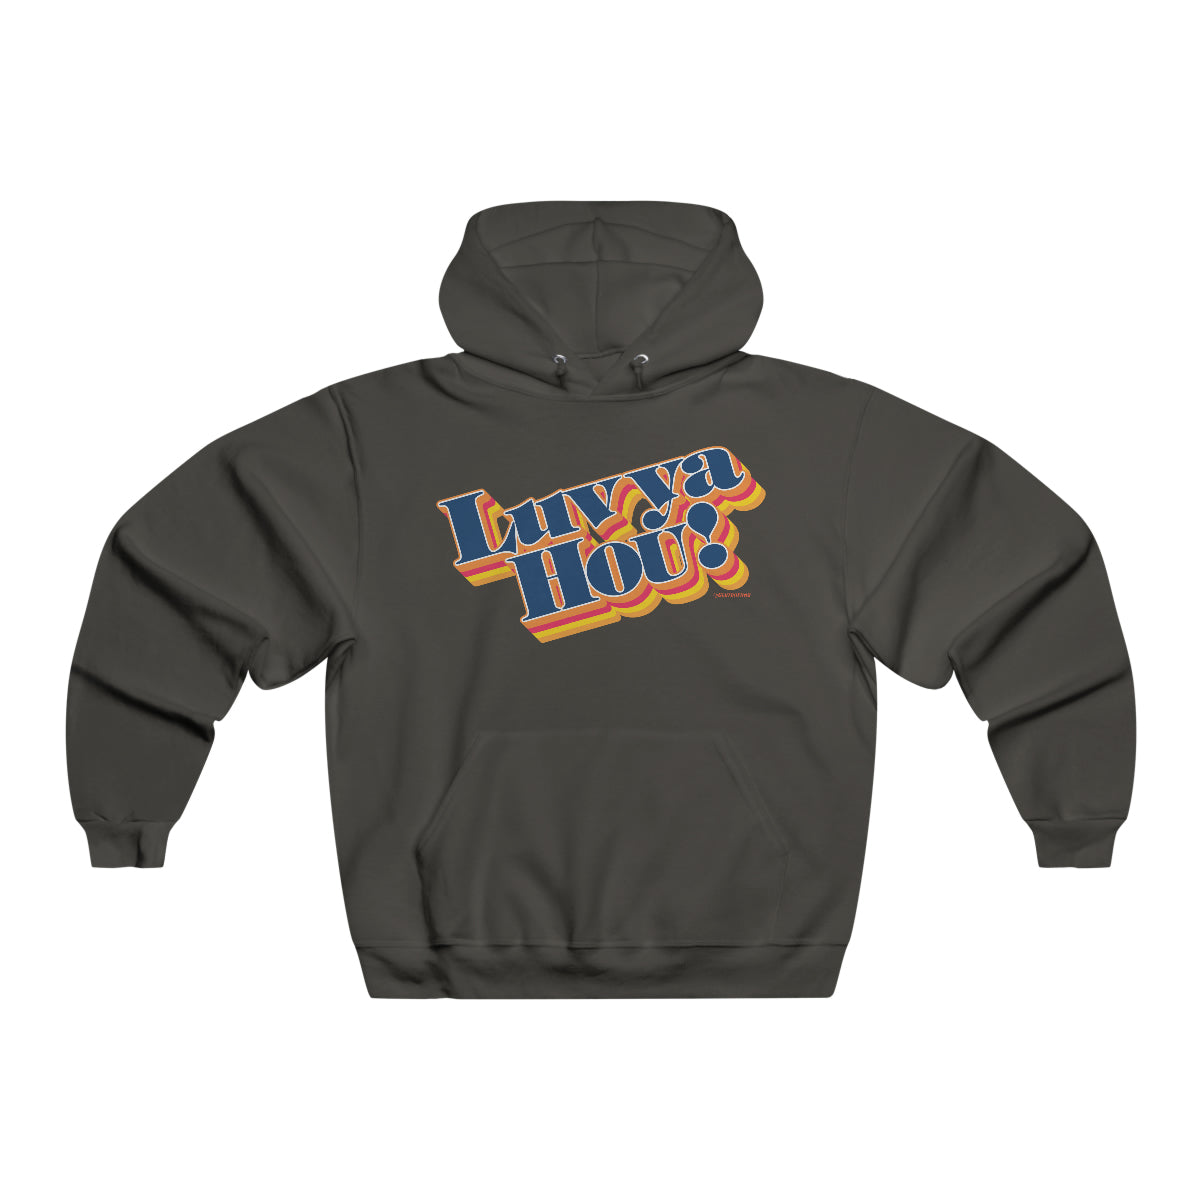 Luv Ya Hou! (Baseball) - Hooded Sweatshirt